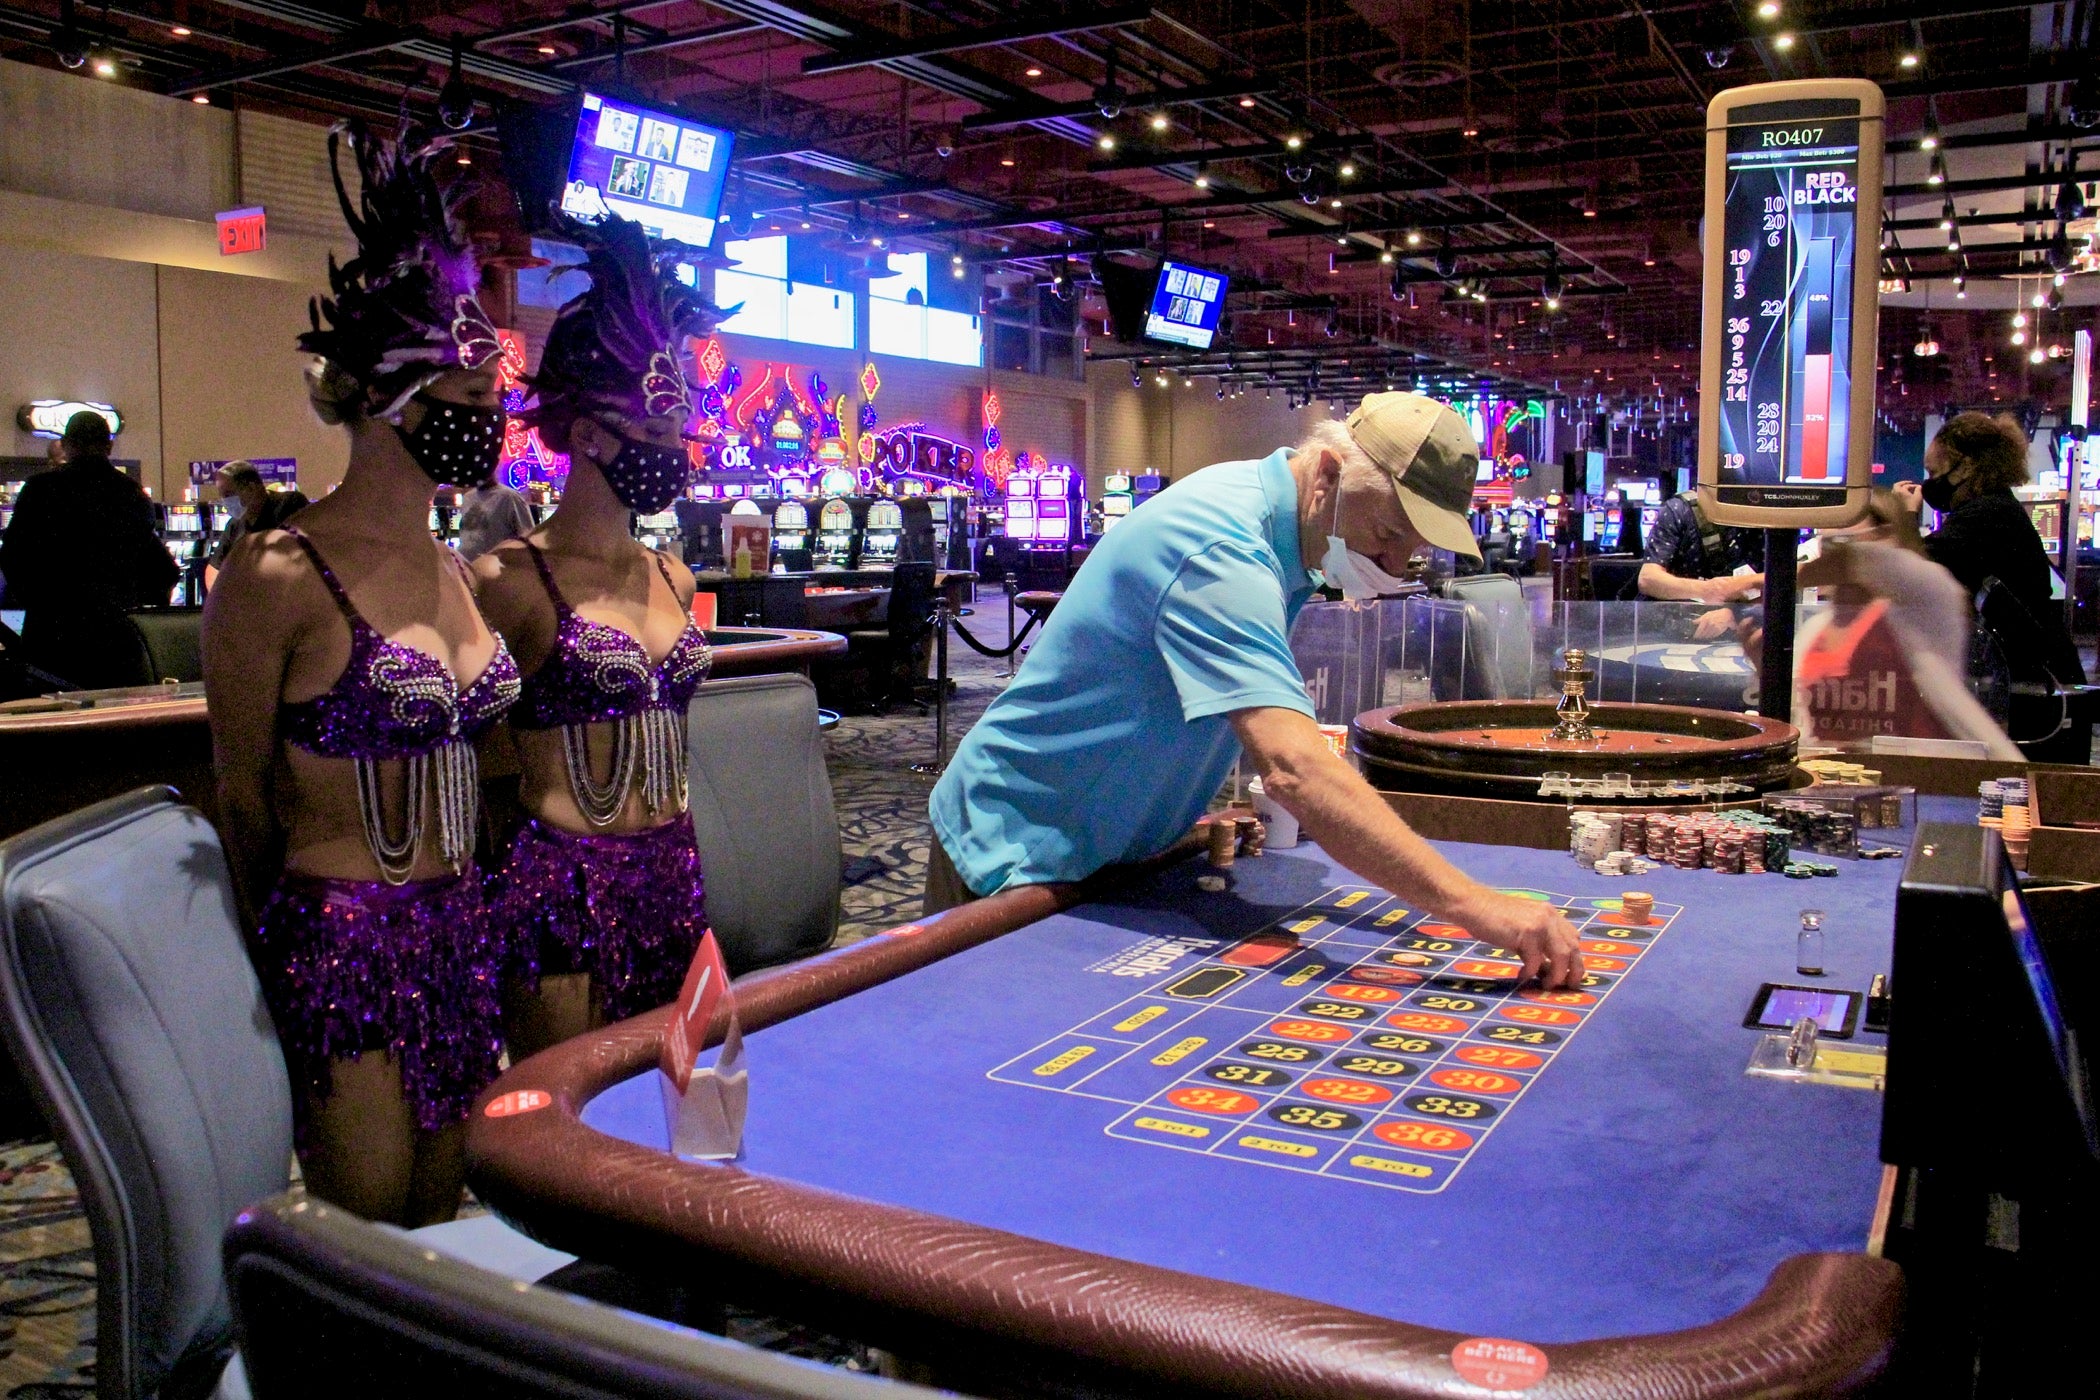 Casino gambling returns to Chester after coronavirus closure - WHYY